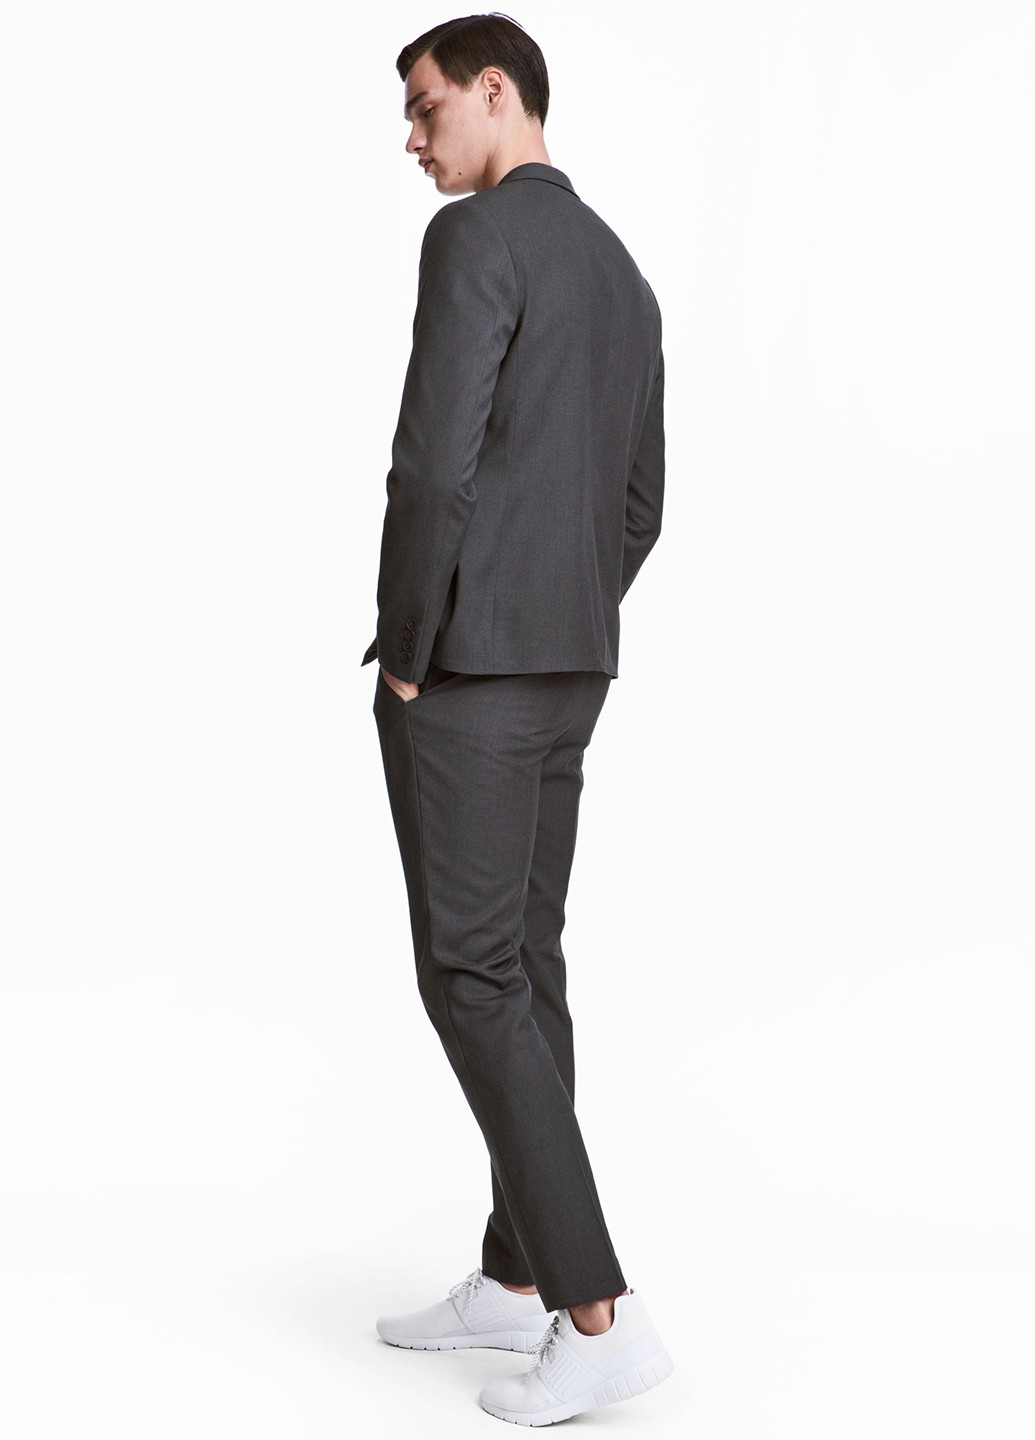 Грифельно-серые классические демисезонные зауженные брюки H&M